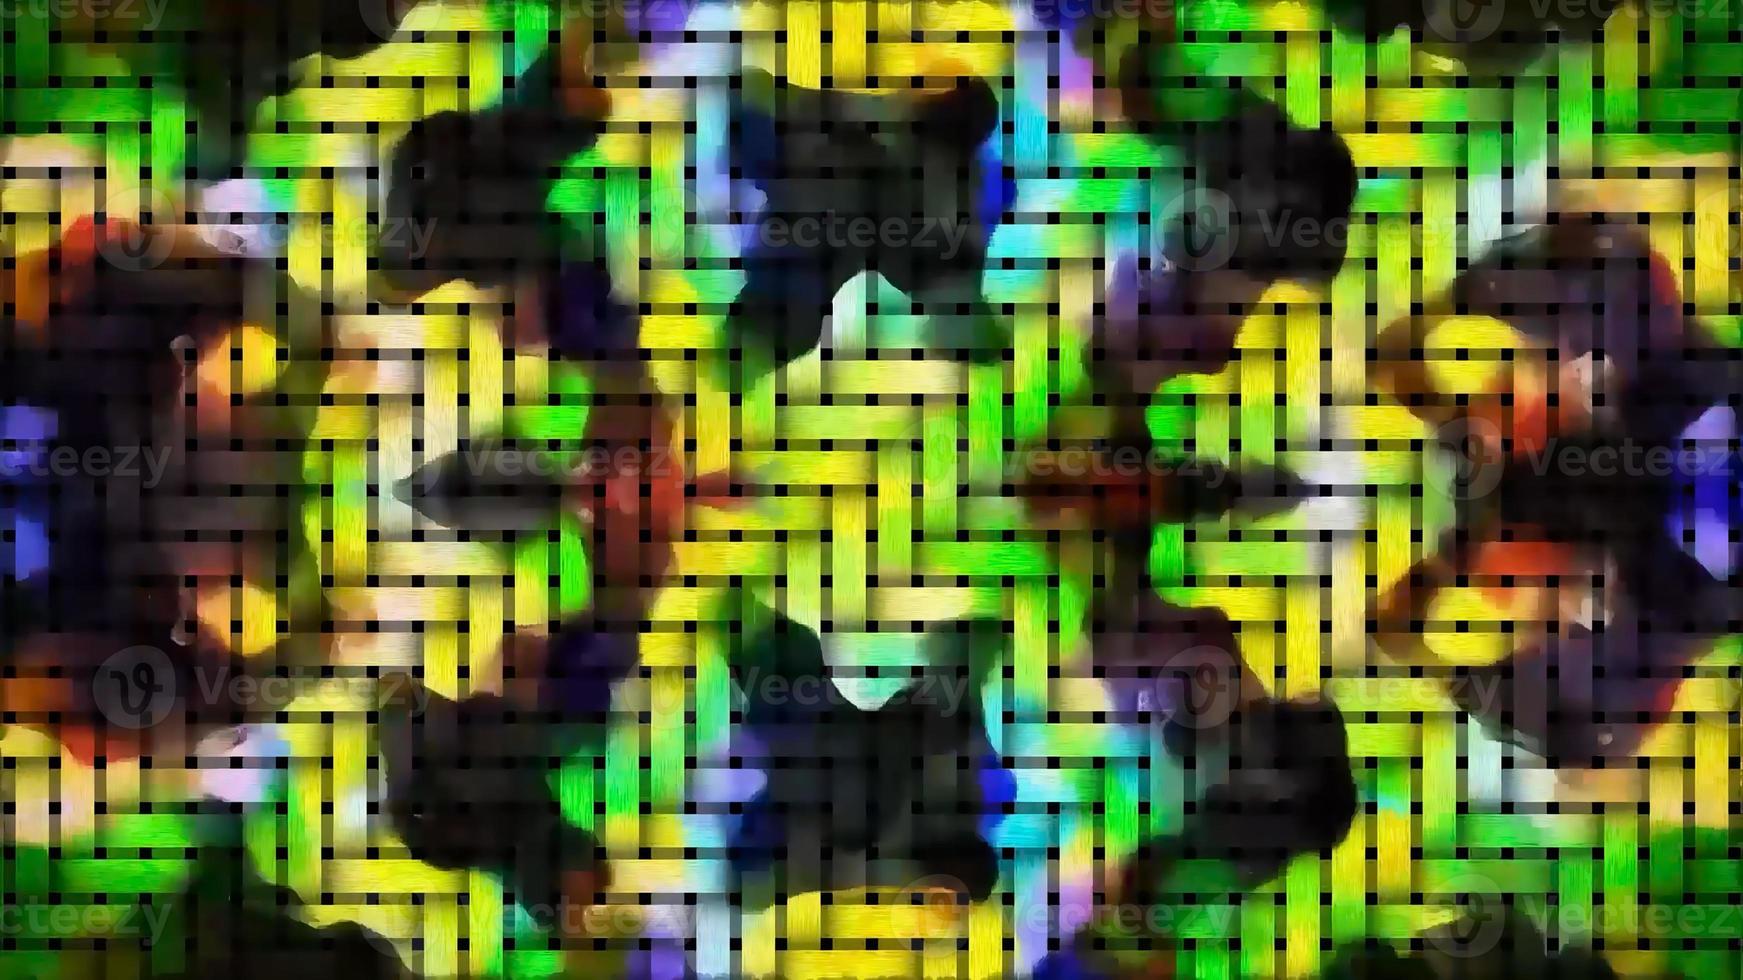 renderização digital de padrão abstrato geométrico foto